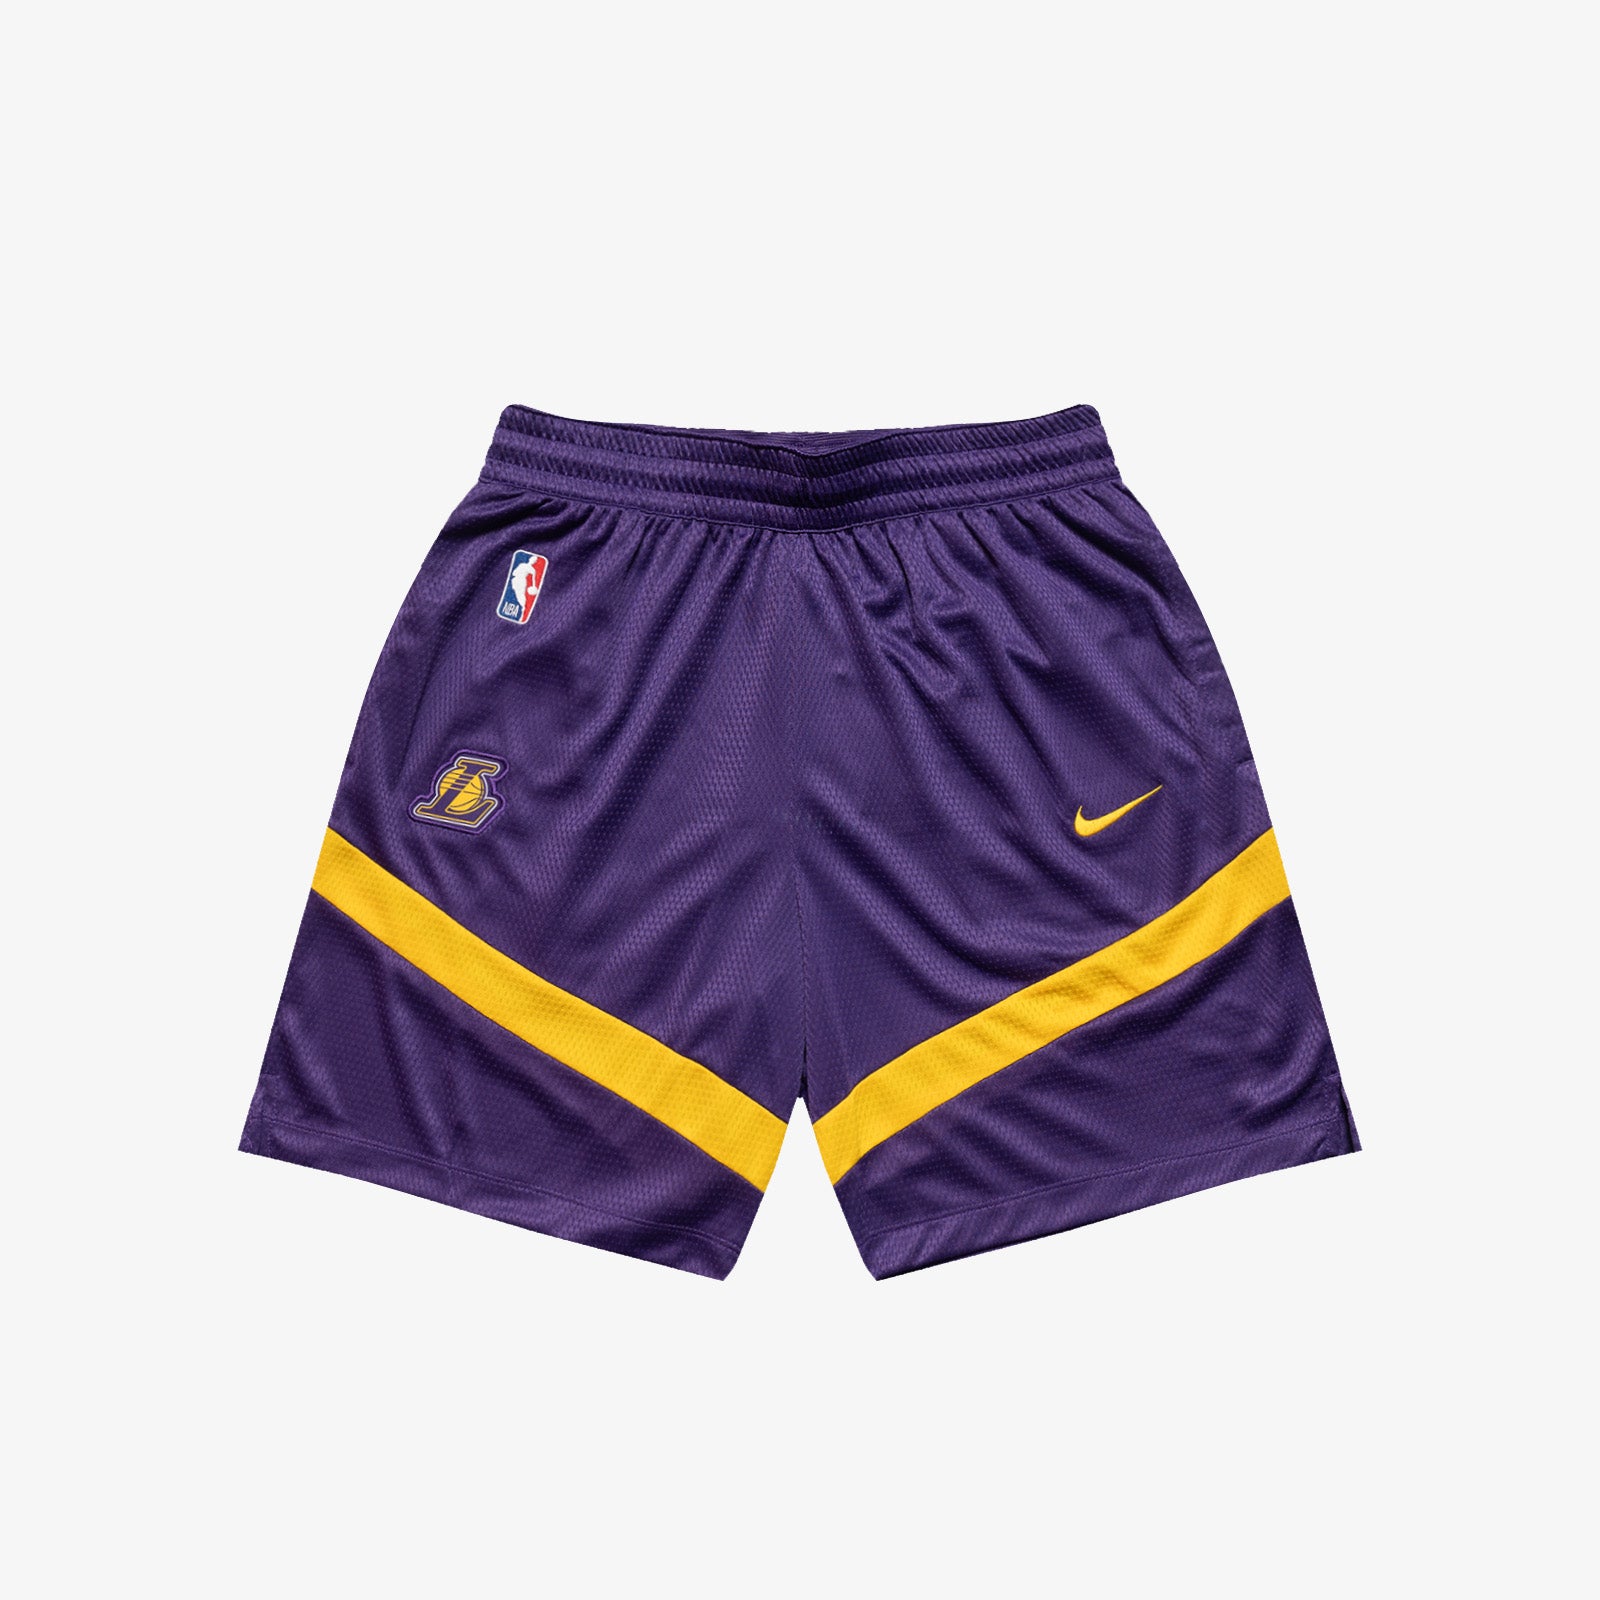 Official NBA Shorts, NBA Basketball Shorts, Gym Shorts, Compression Shorts